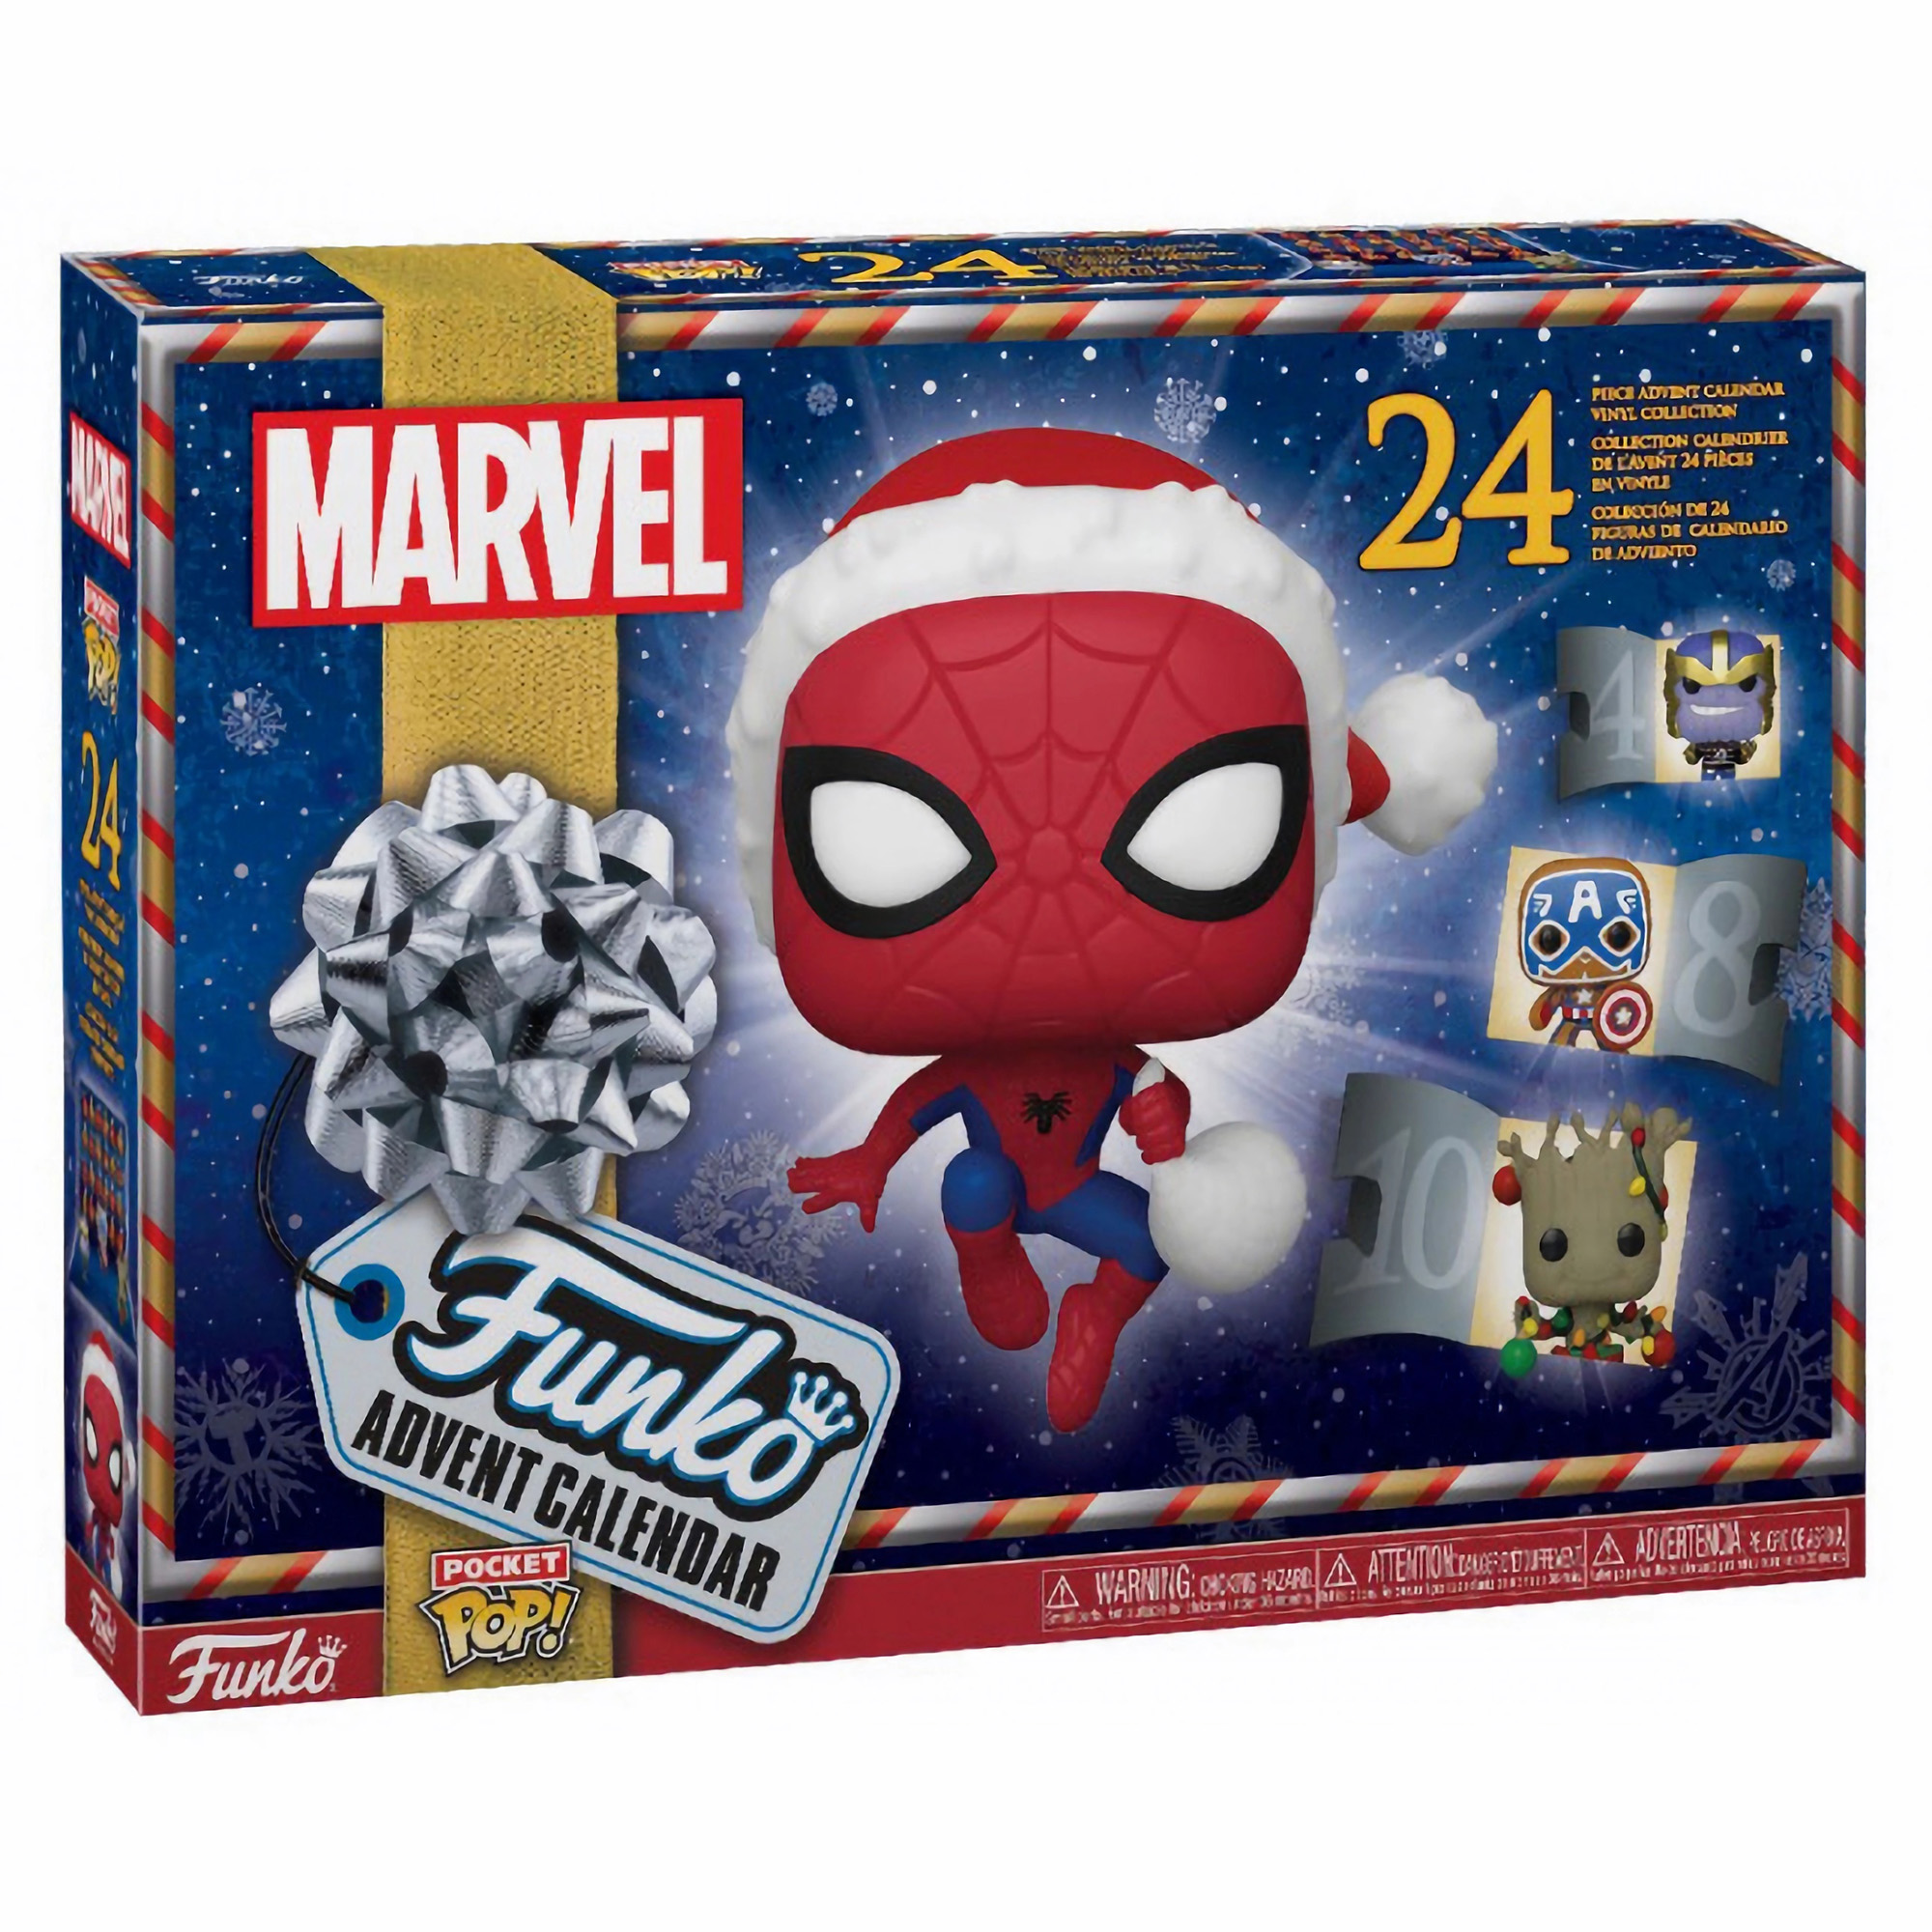 Подарочный набор Funko POP! Адвент календарь Advent Calendar Marvel с фигурками из вселенной Marvel - фото 1